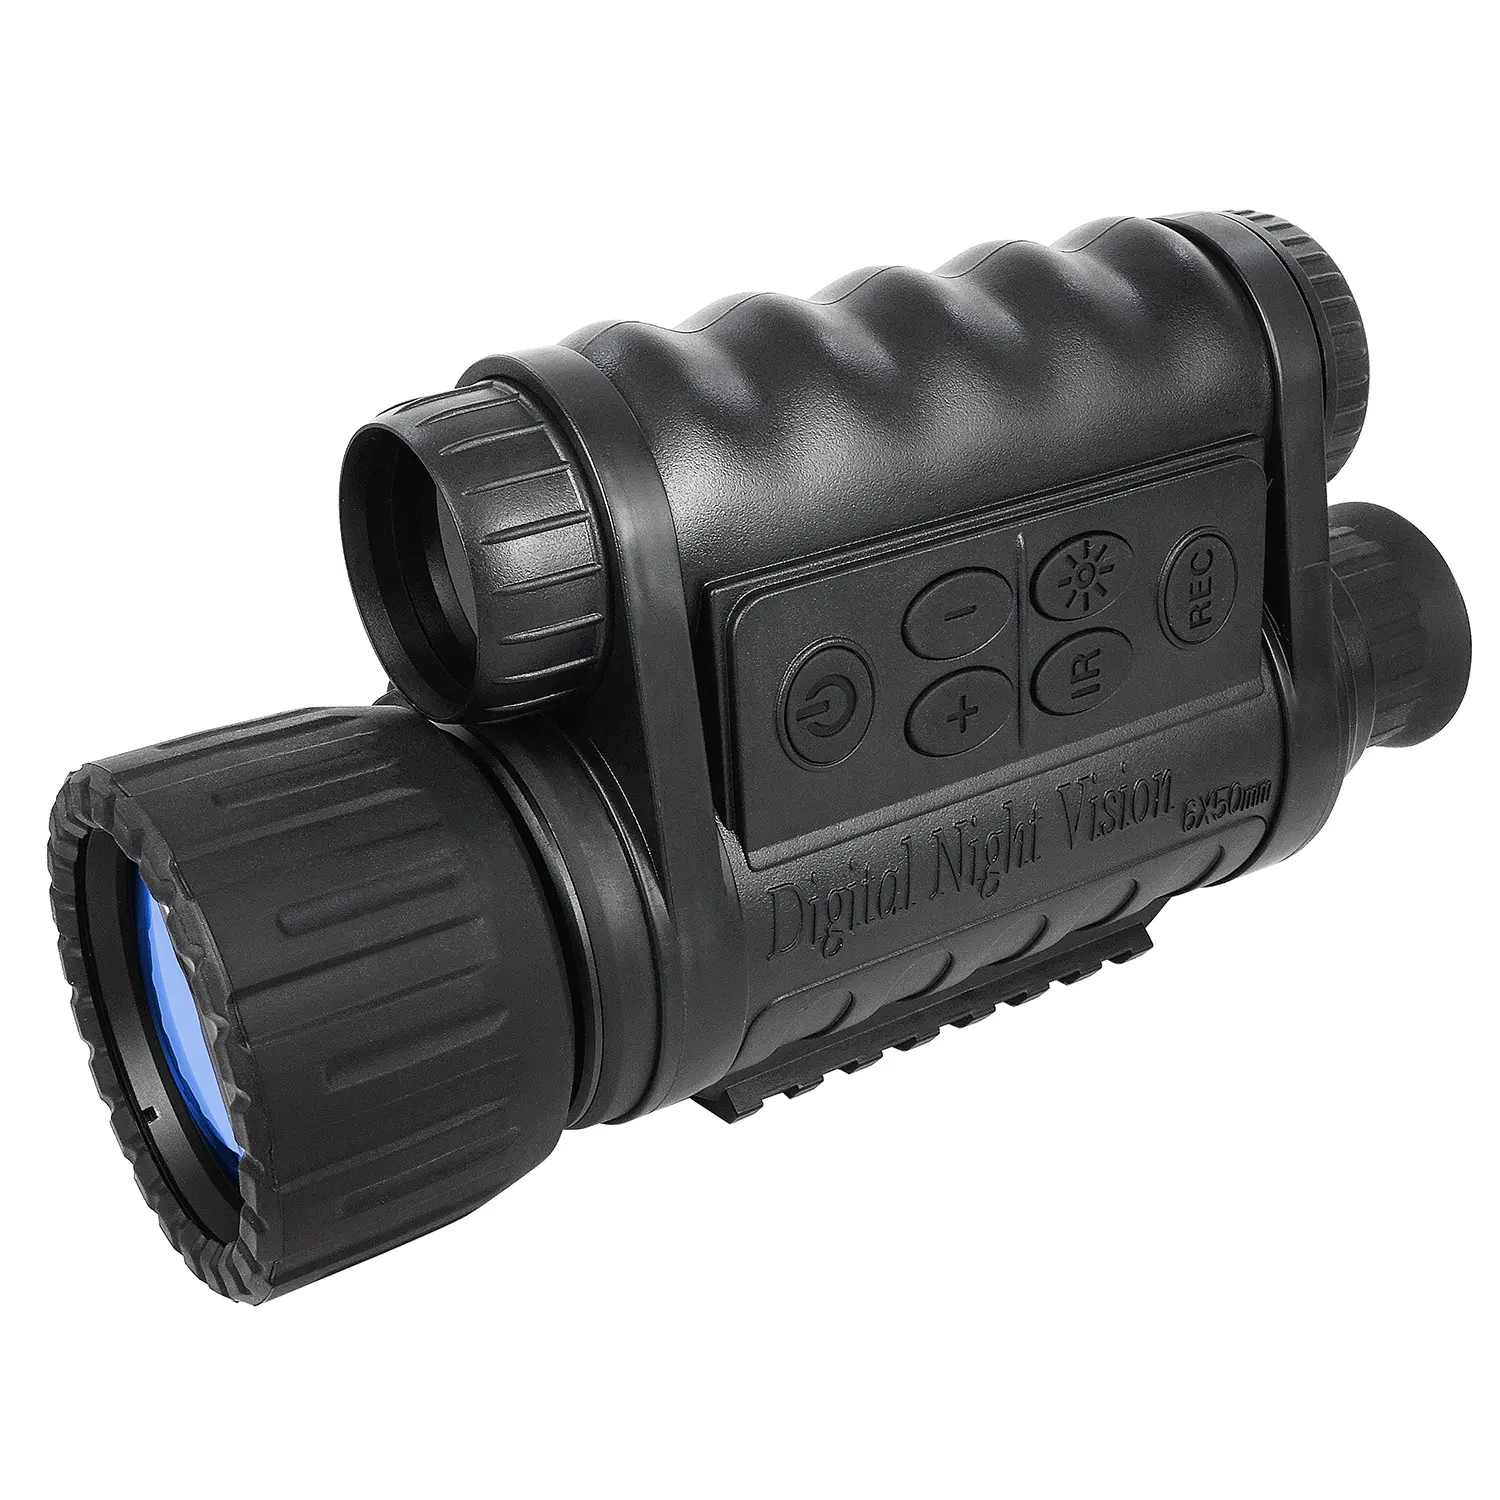 6x50 монокулярный цифровой прибор ночного видения с возможностью записи WG-50 bestguarder